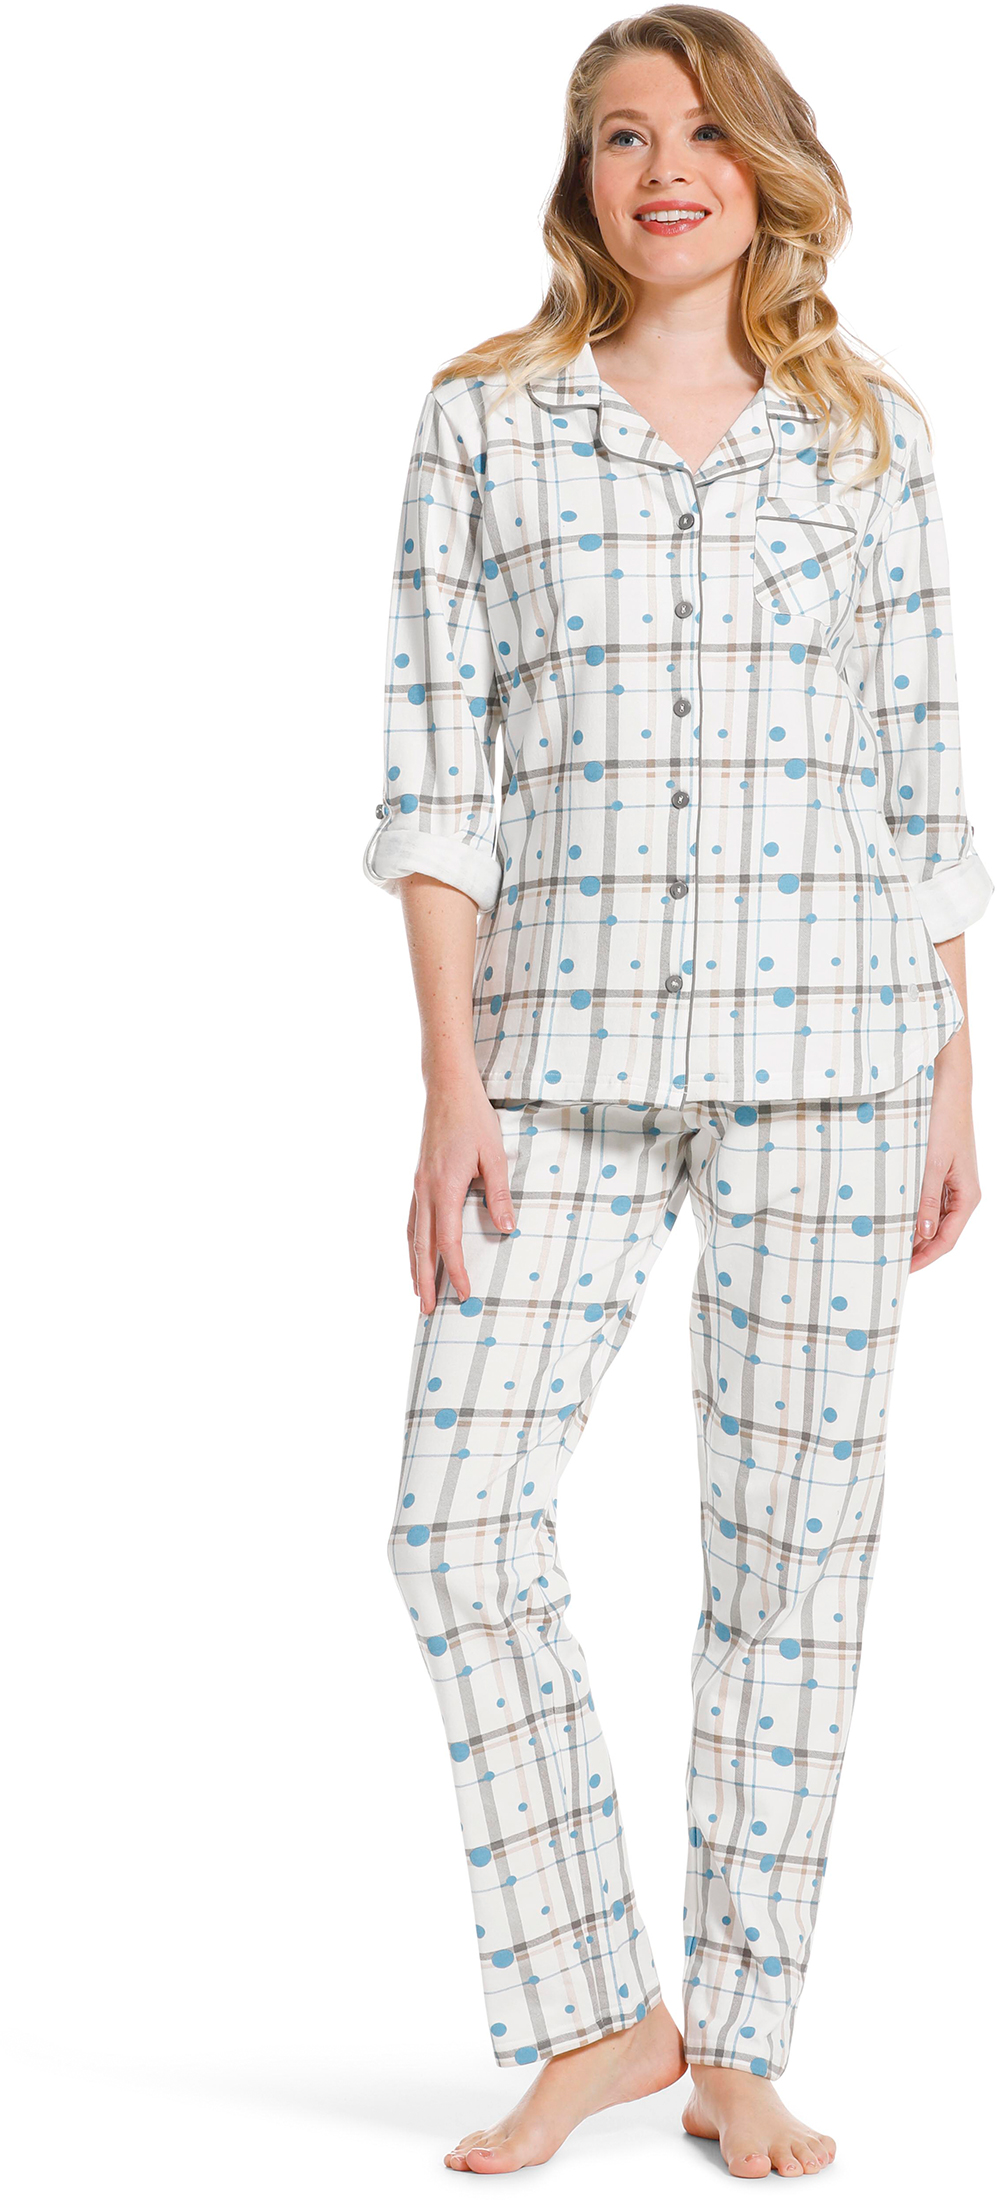 Pastunette dames doorknoop pyjama 20222-142-6-40